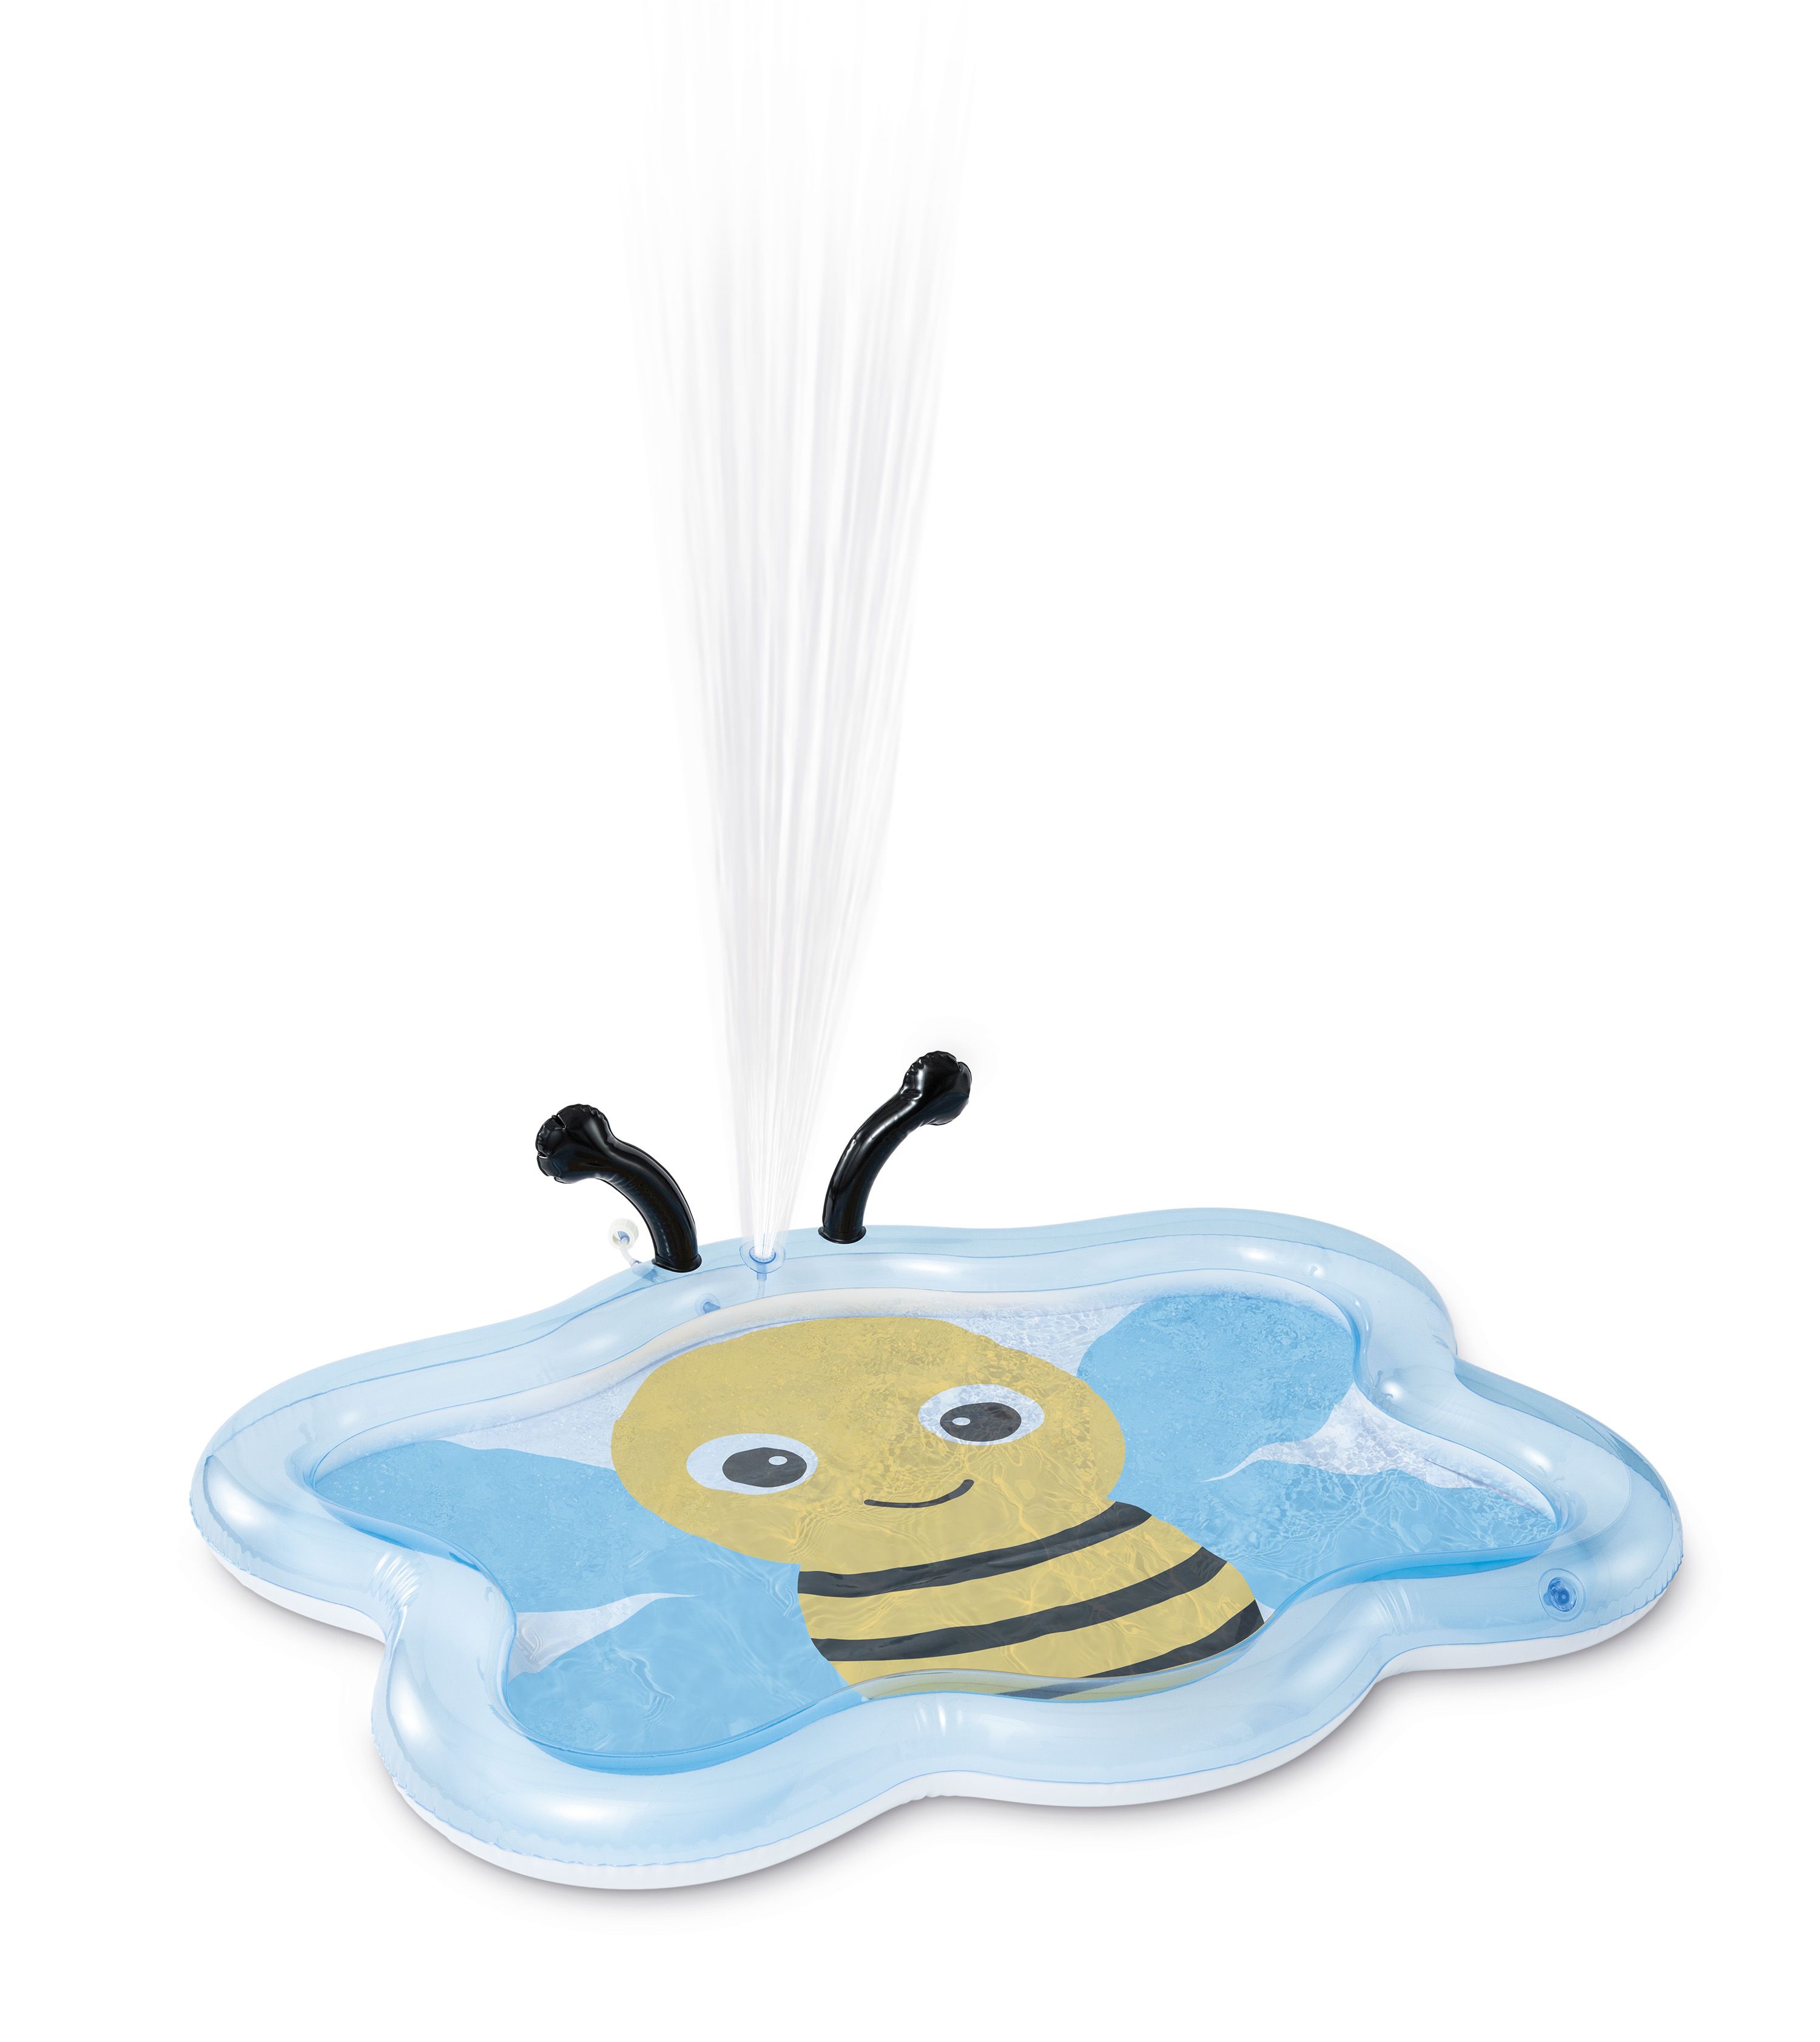 Intex bijen zwembad met verstuiver, Leeftijd 2+